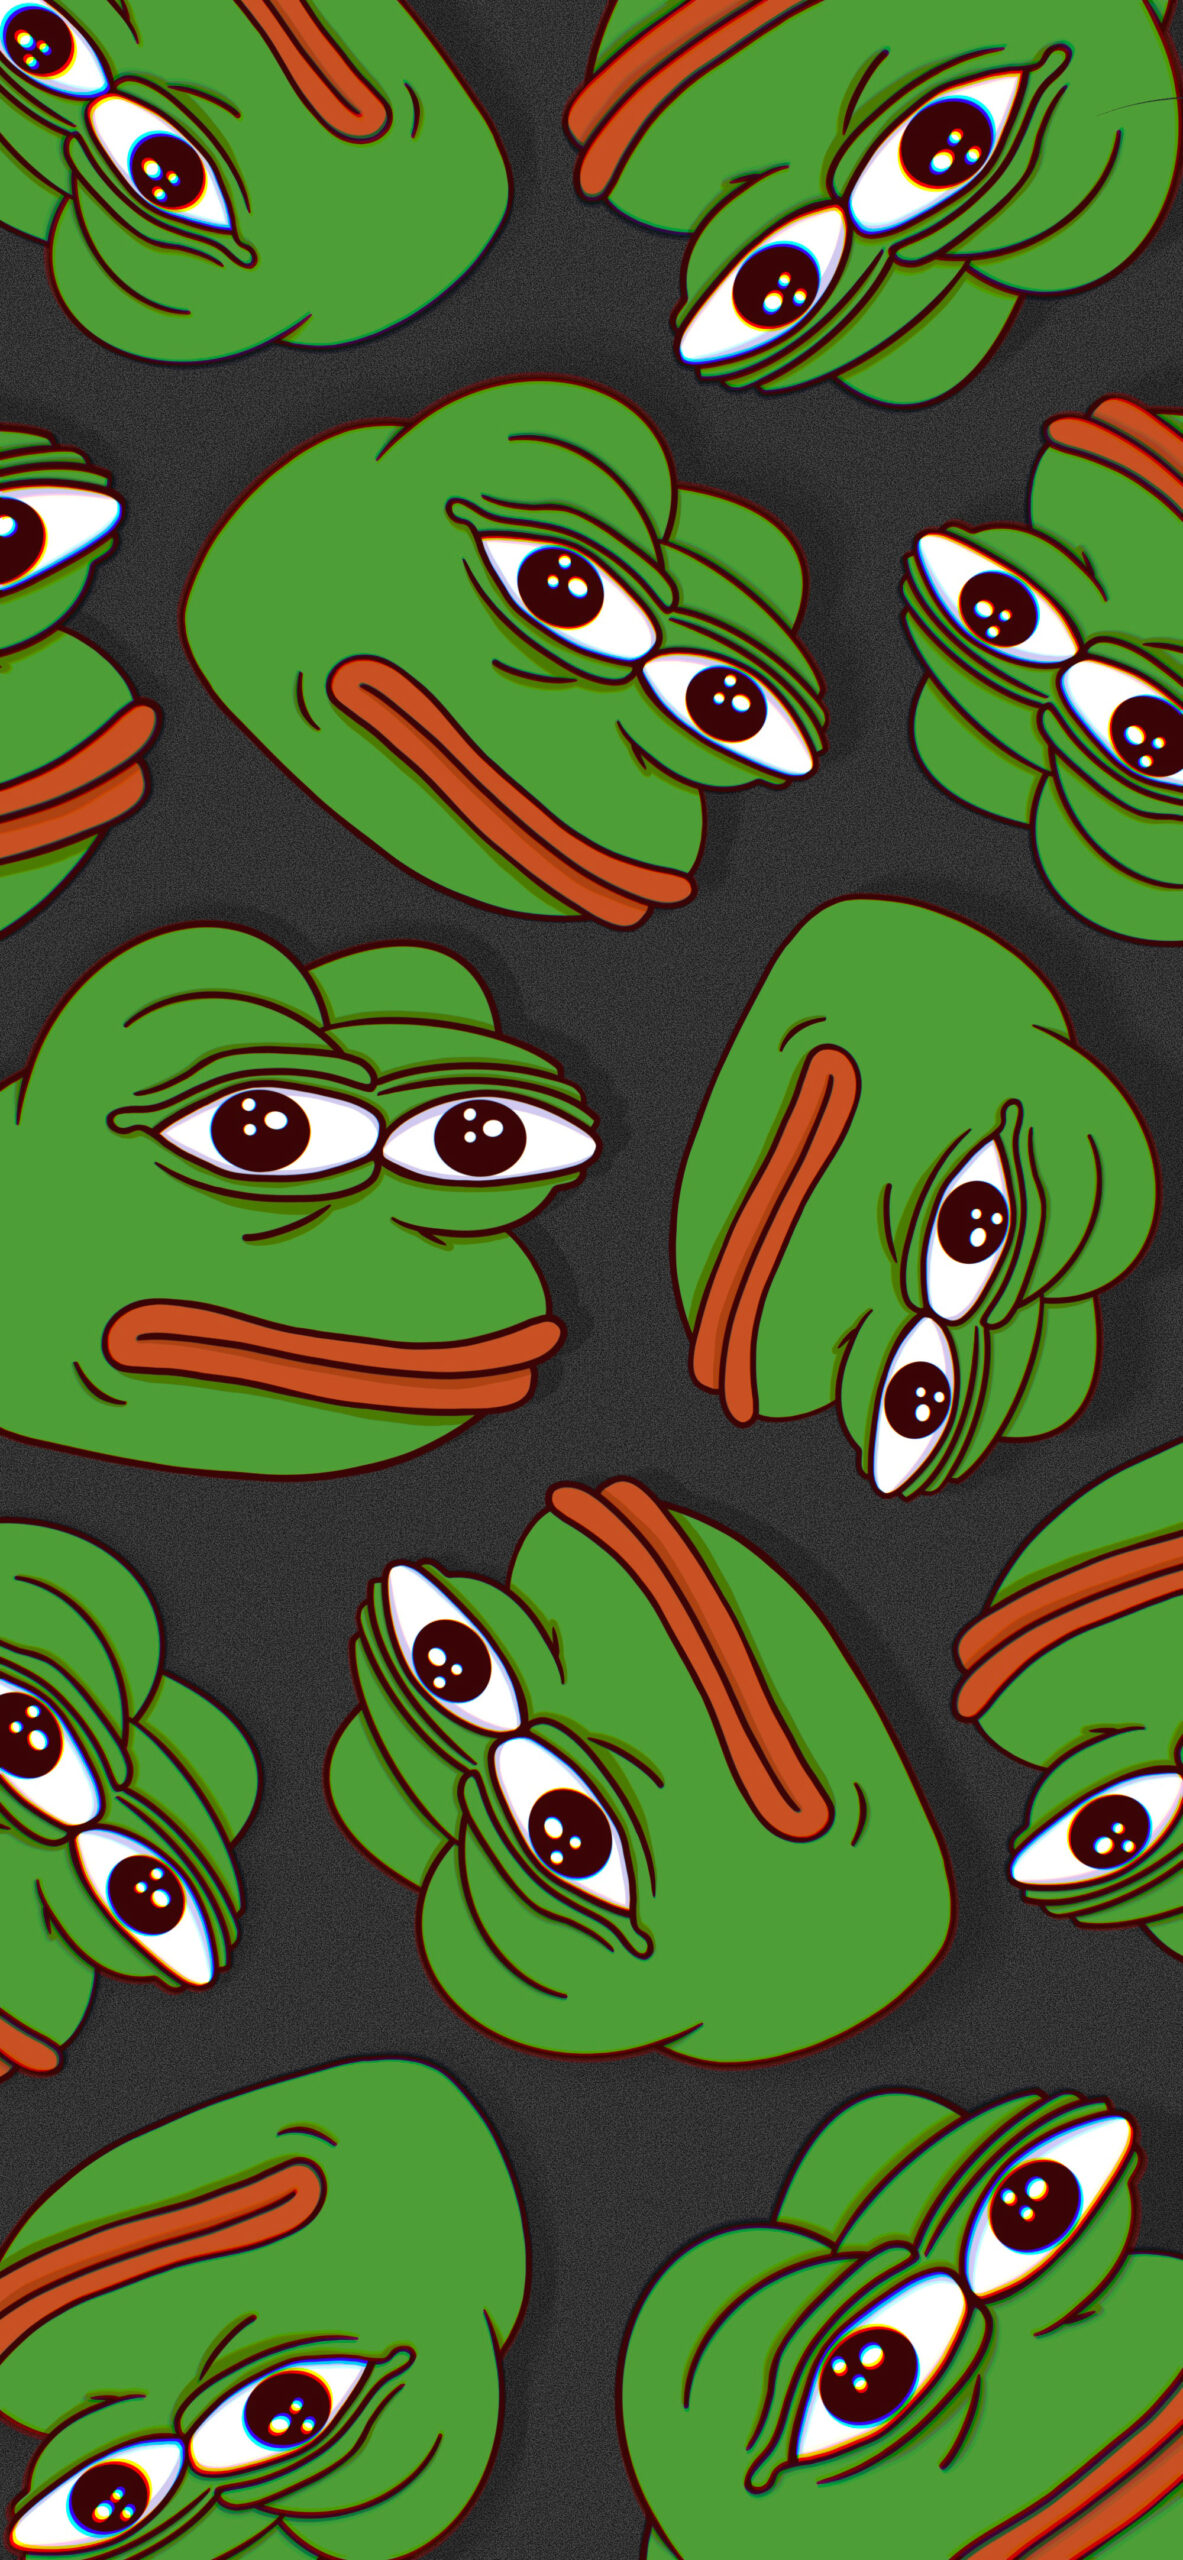 Sad Frog Wallpapers